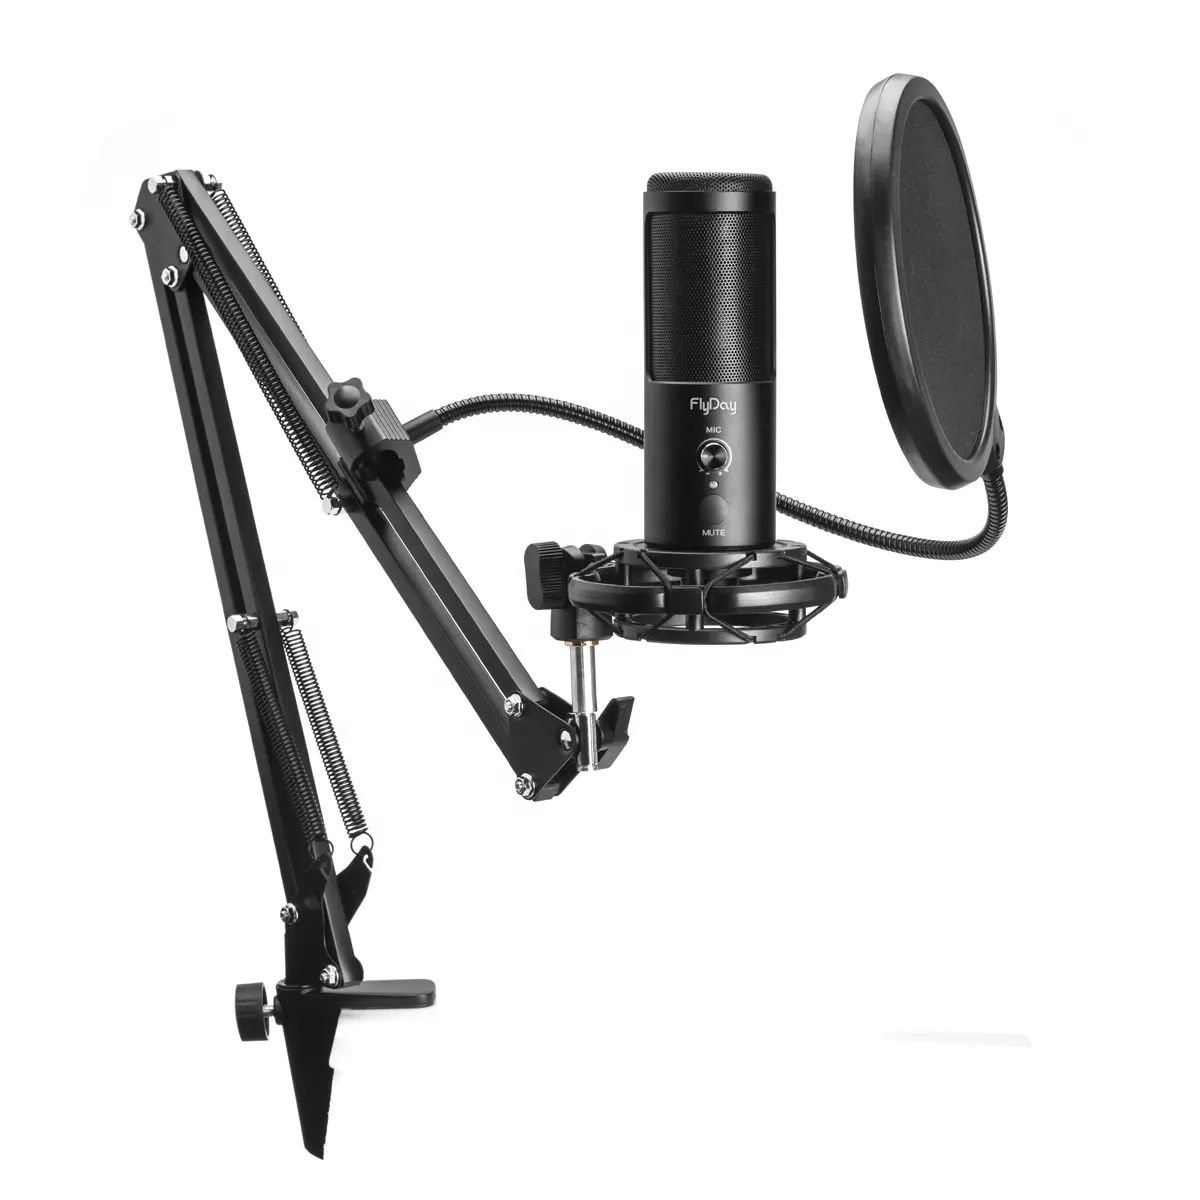 OEM de fábrica venta al por mayor USB micrófono de condensador profesional jugador micrófono de Streaming equipo para estudio de grabación micrófono